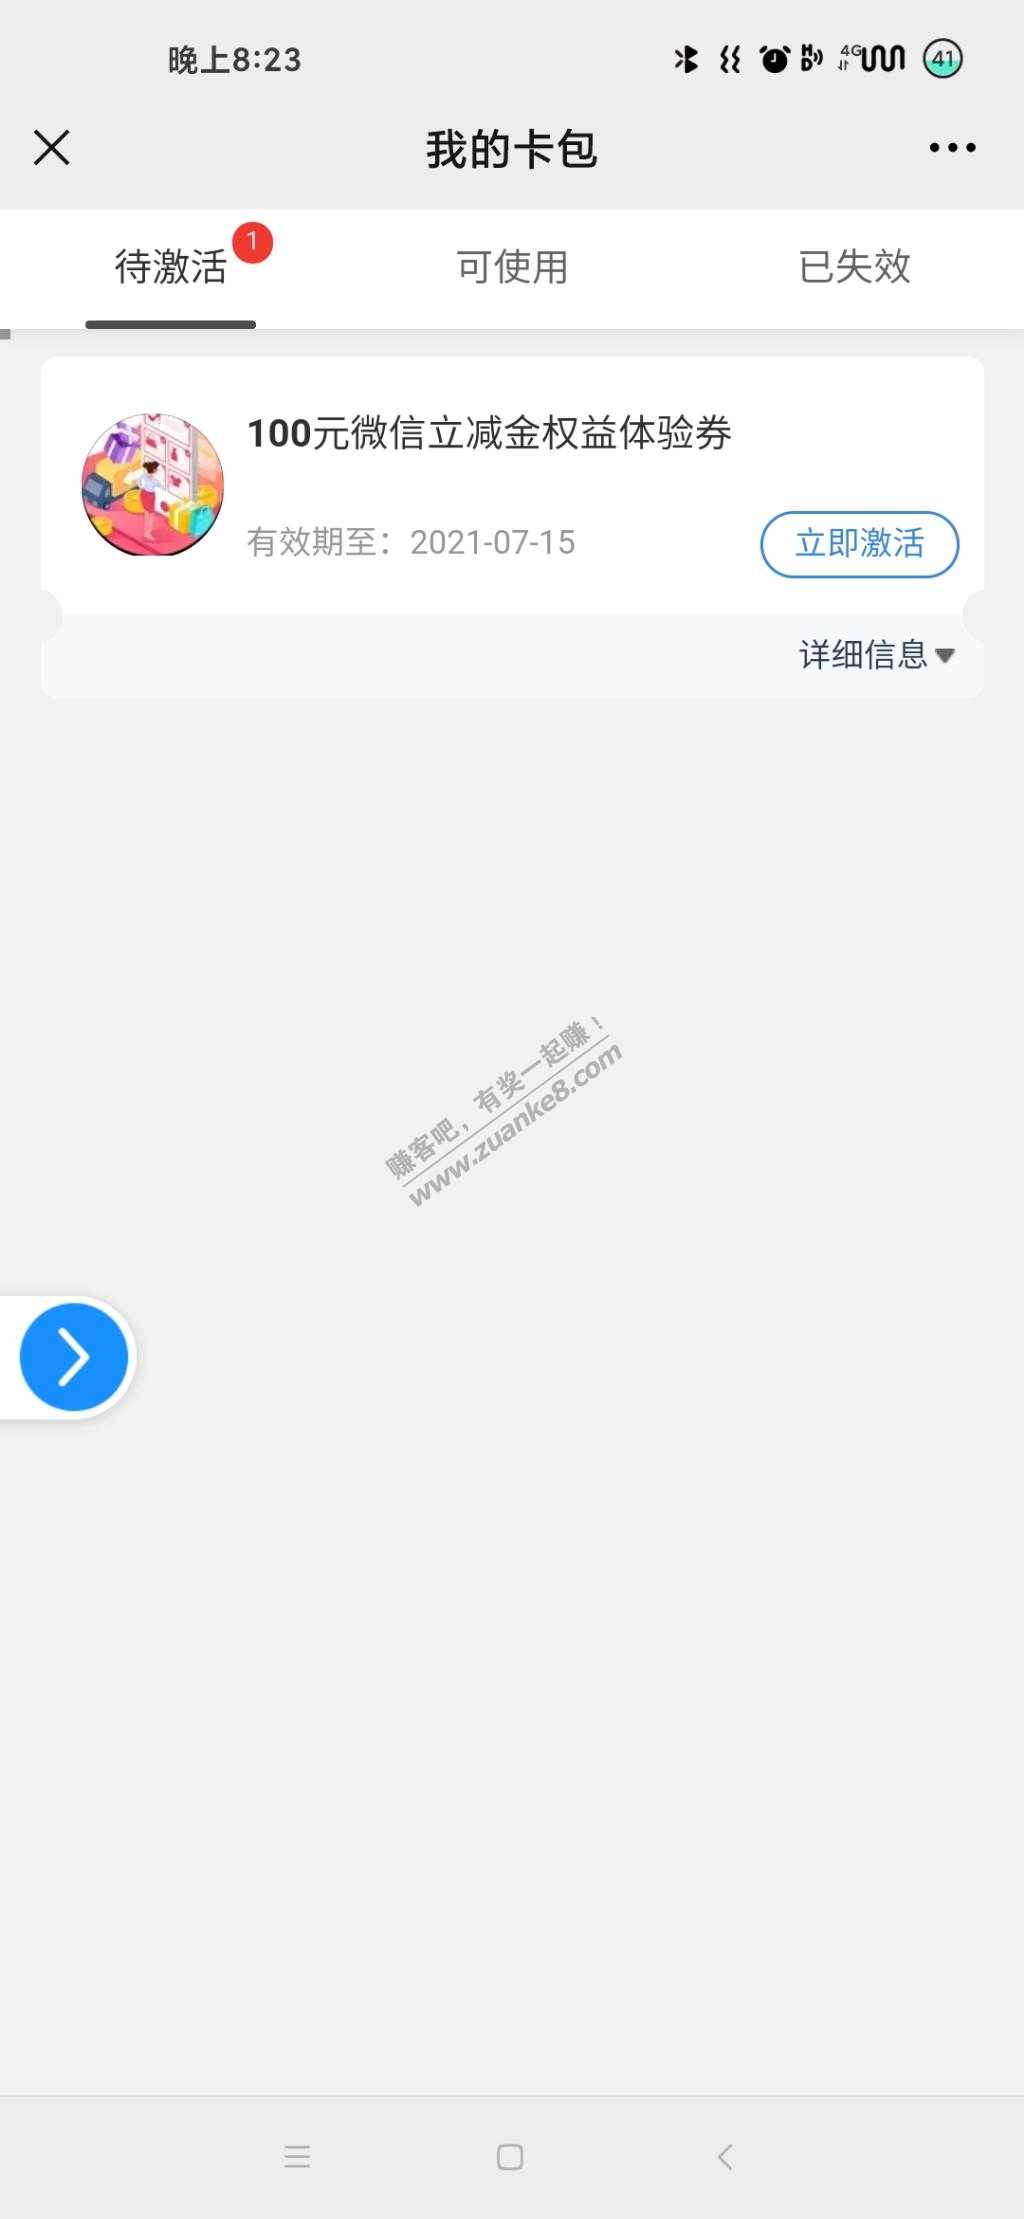 江苏建行-激活快贷-100V.x立减金-惠小助(52huixz.com)